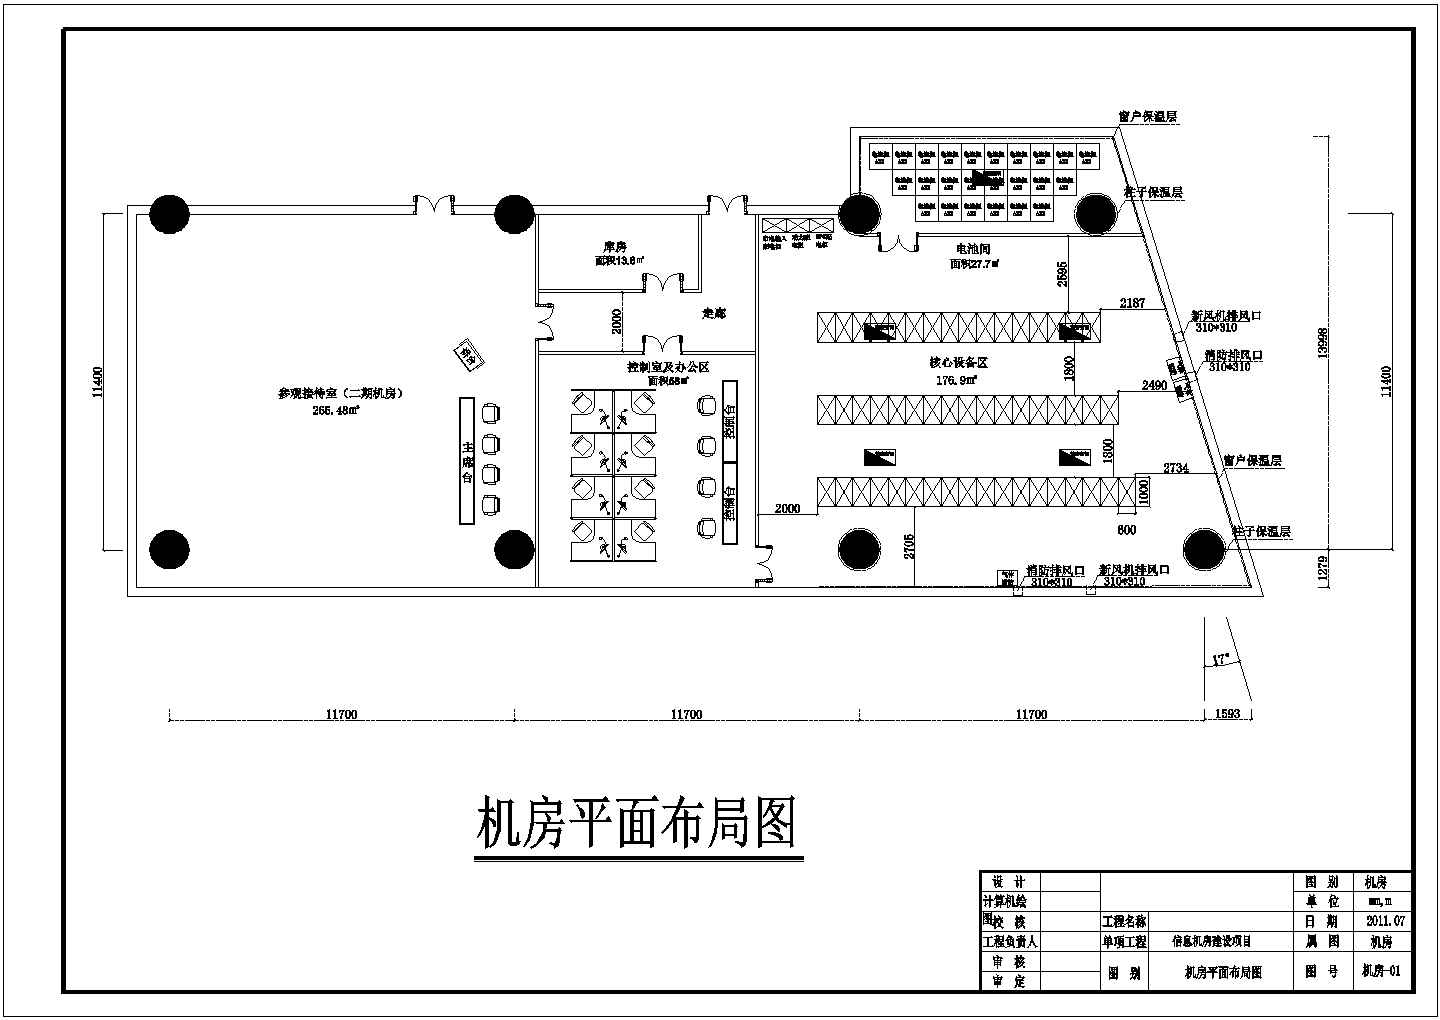 北京某证券公司中心机房建设电气施工图